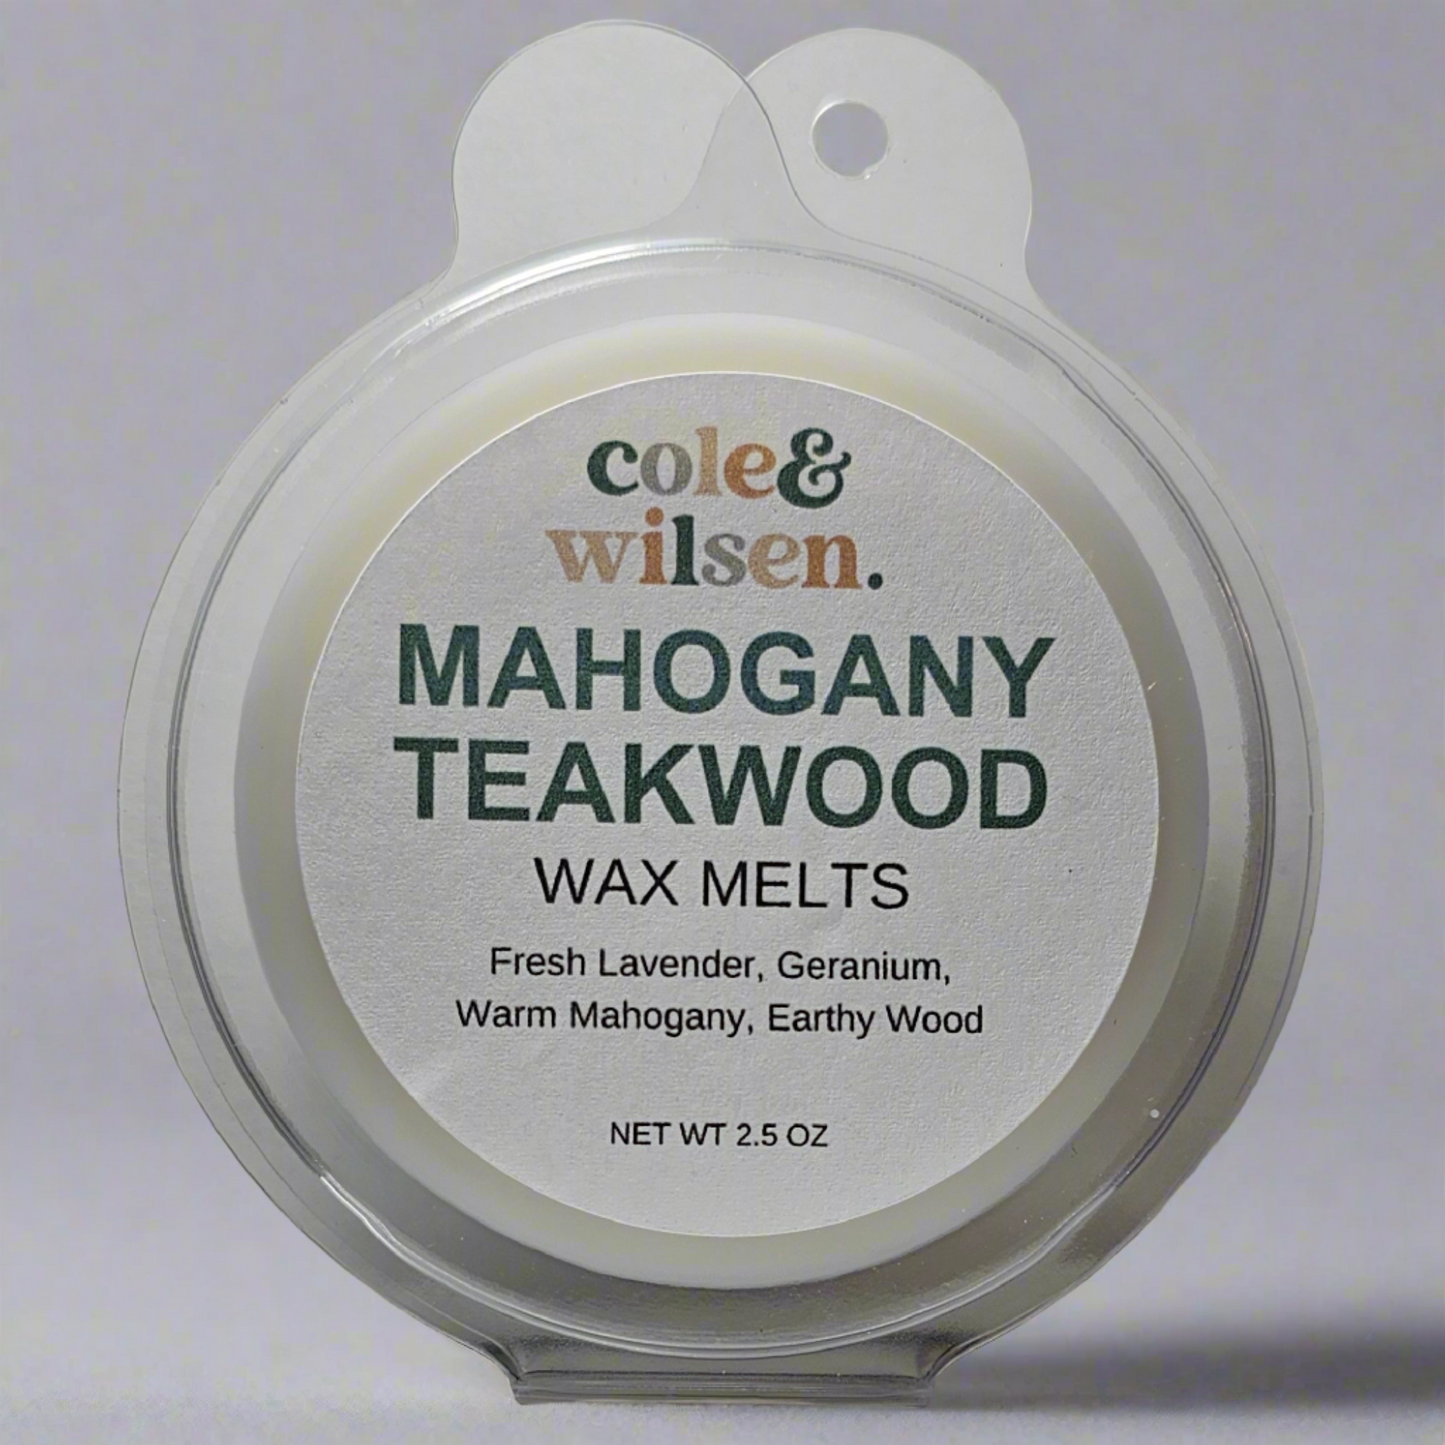 Mahogany Teakwood Wax Melt